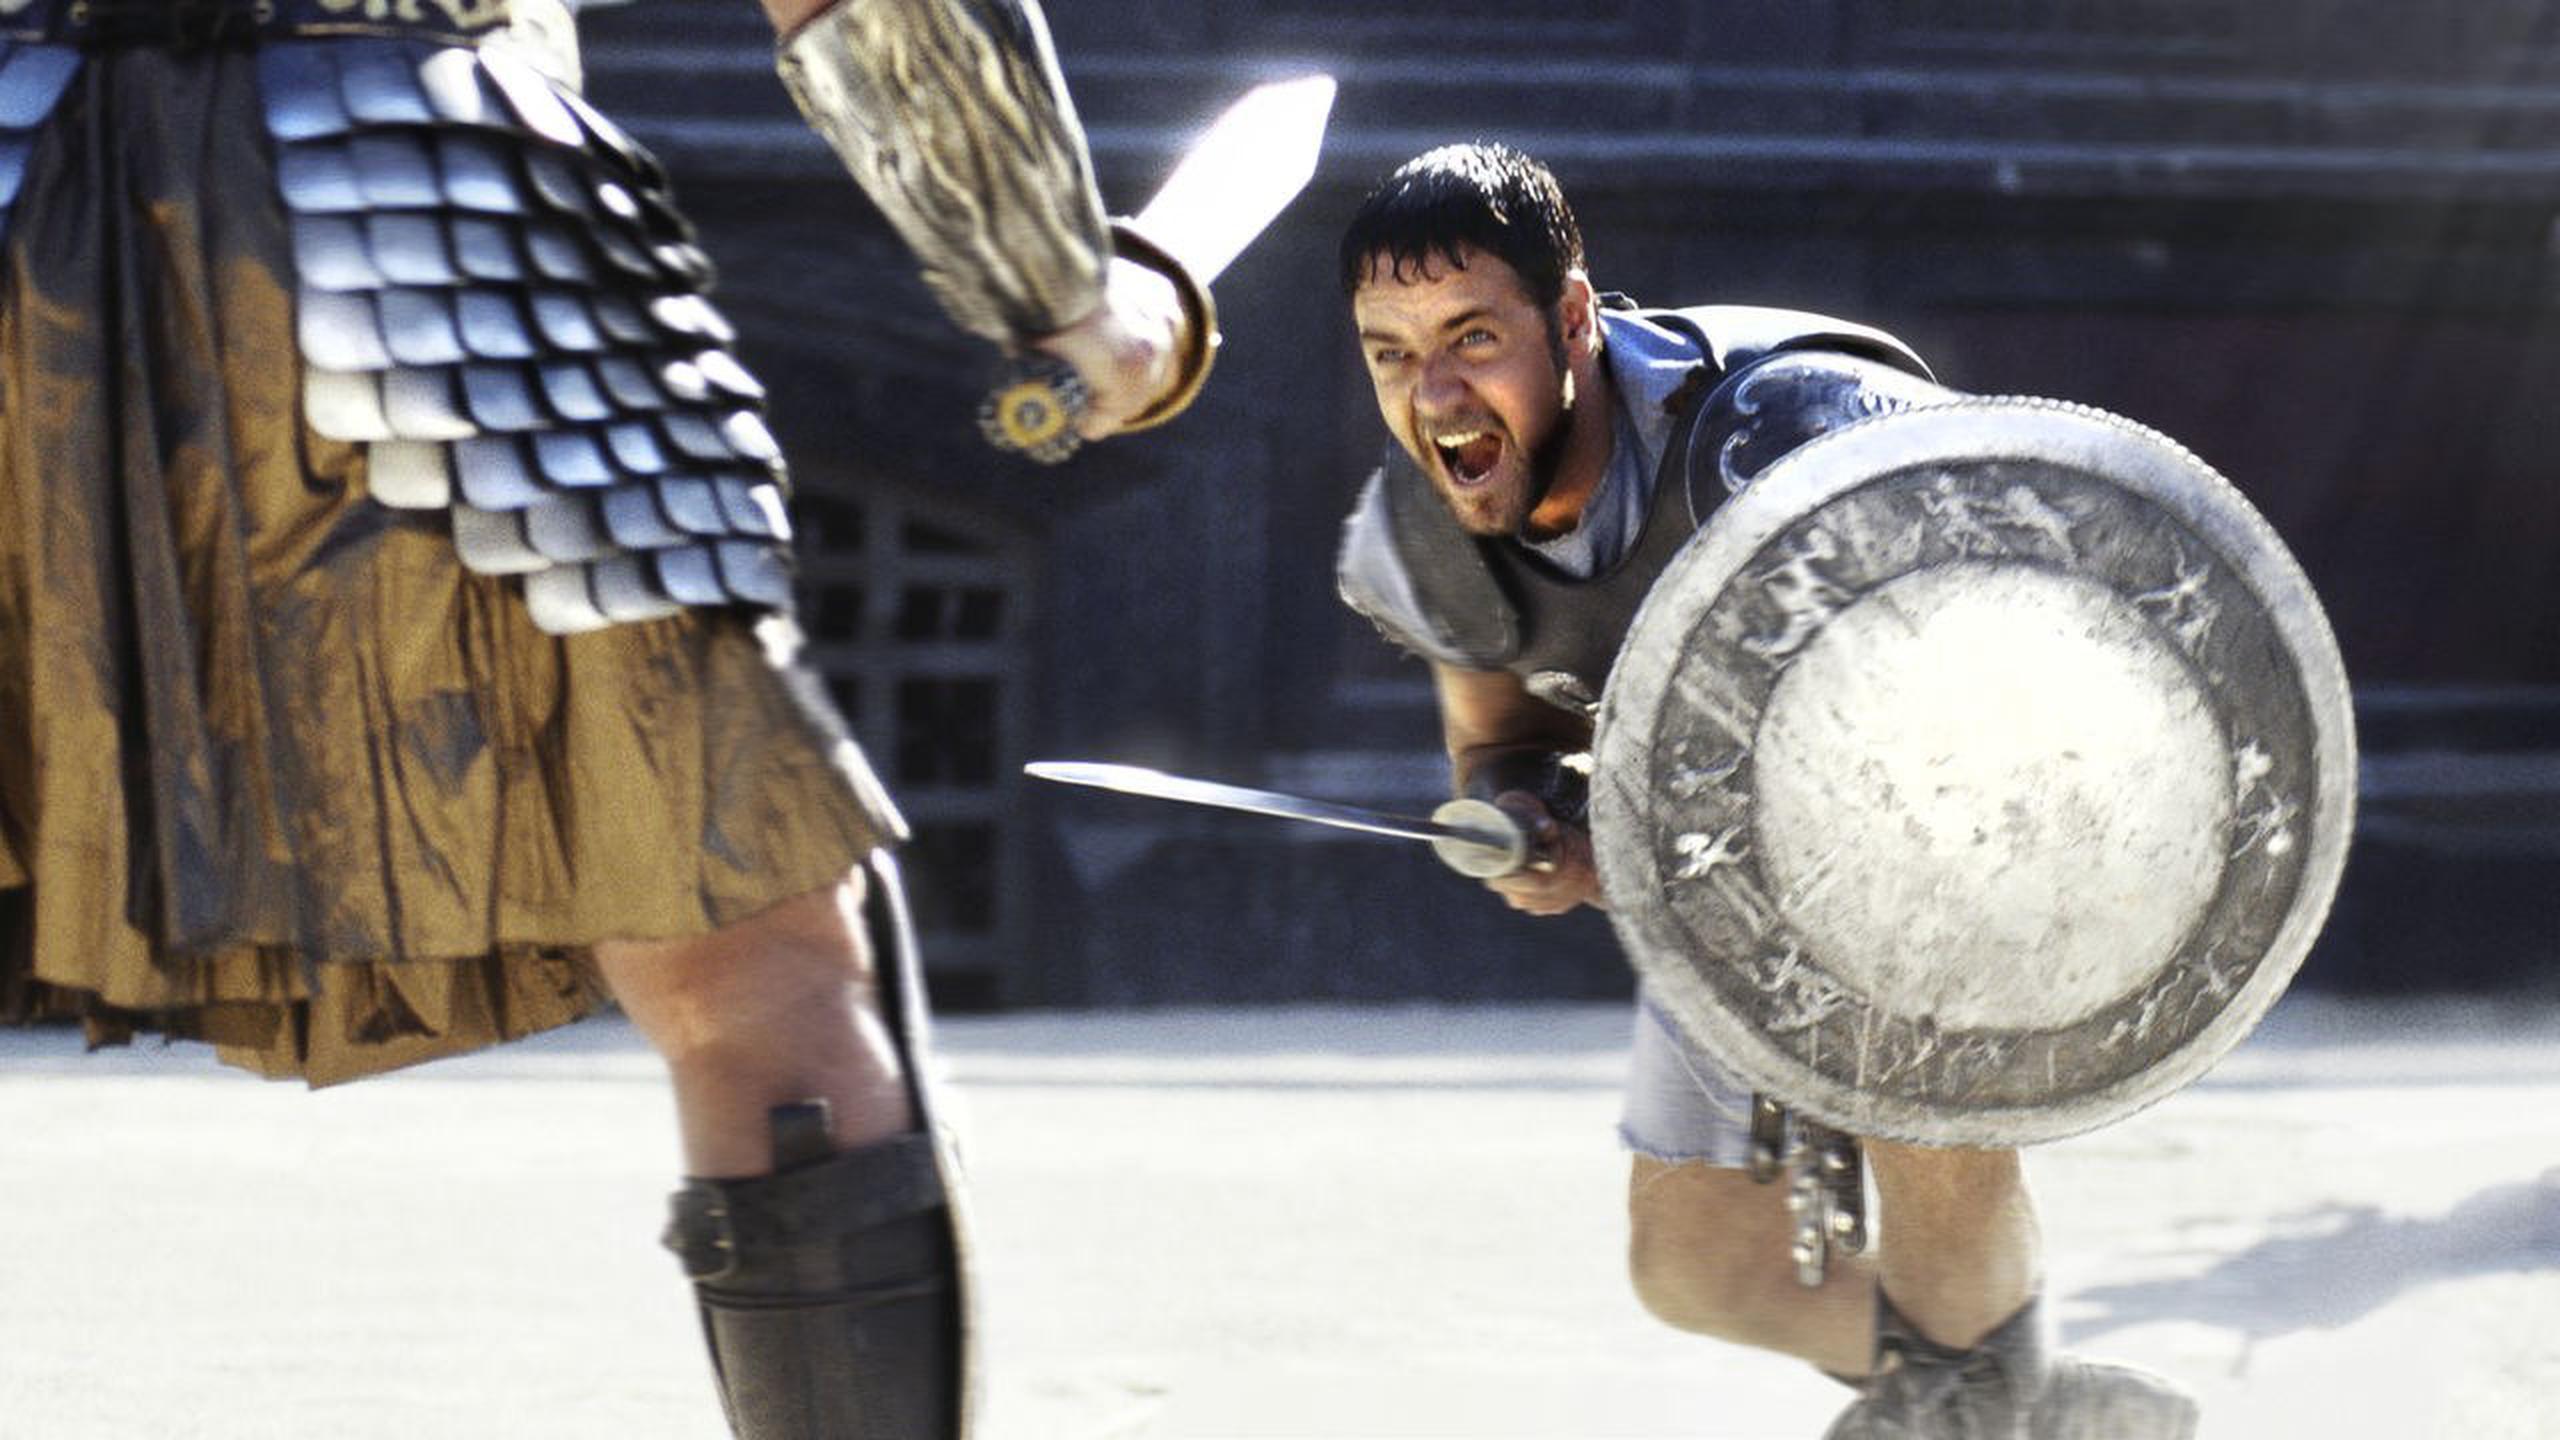 Russell Crowe dio vida a Maximus en lo que resultó ser una de las películas más taquilleras del 2000: "Gladiator". La cinta fue nominada para múltiples premios de la Academia, llevándose la estatuilla de mejor película.